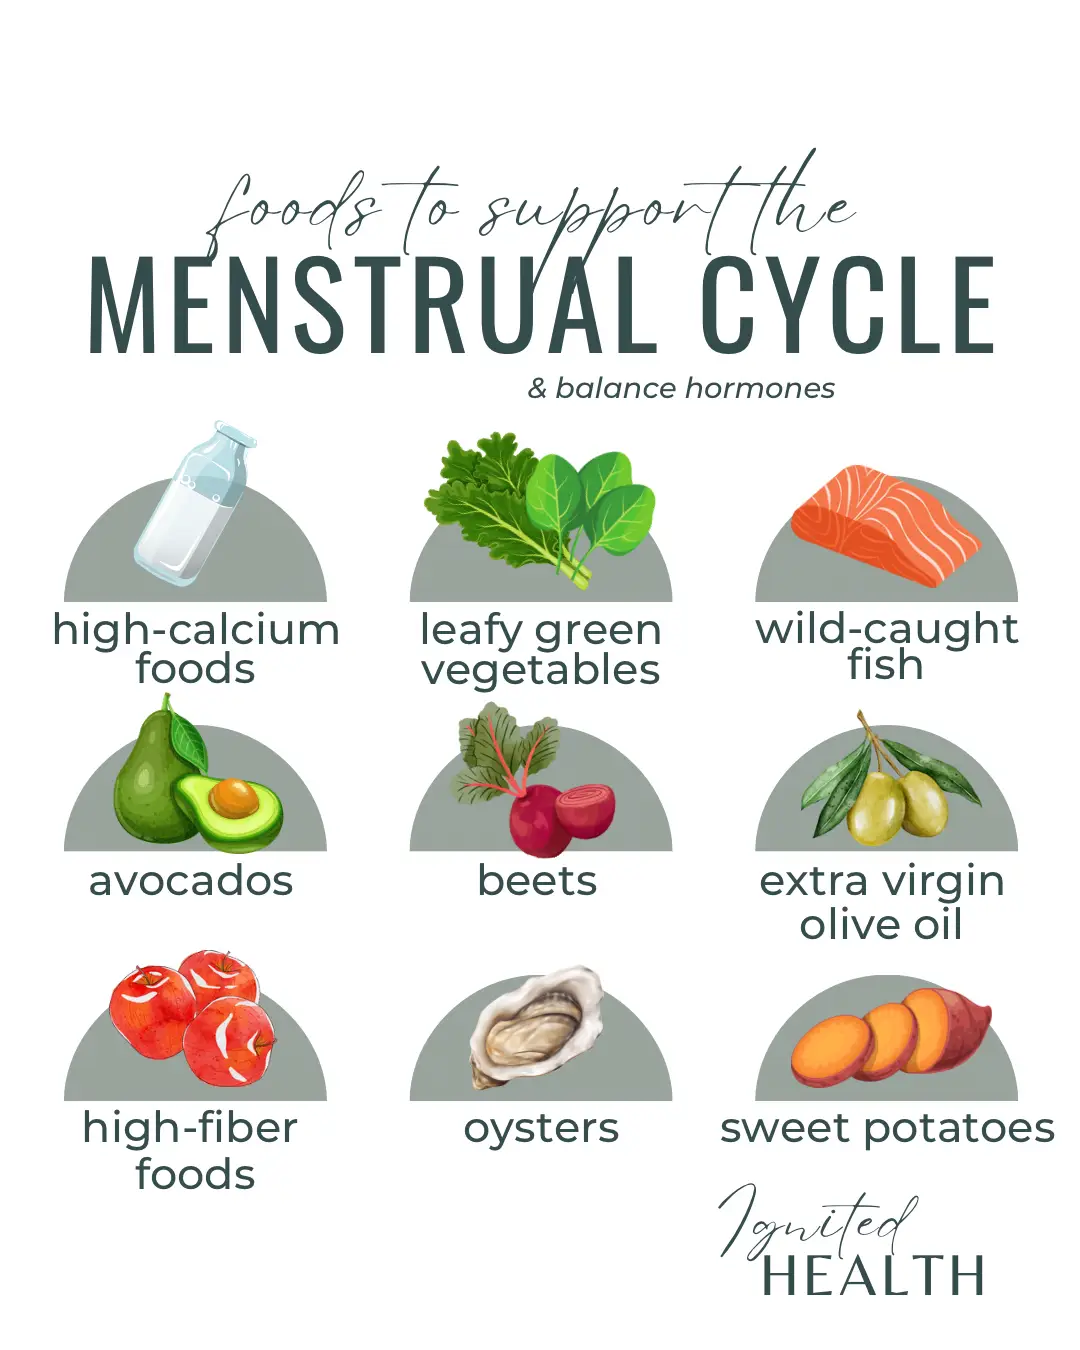 Calcium and menstrual health